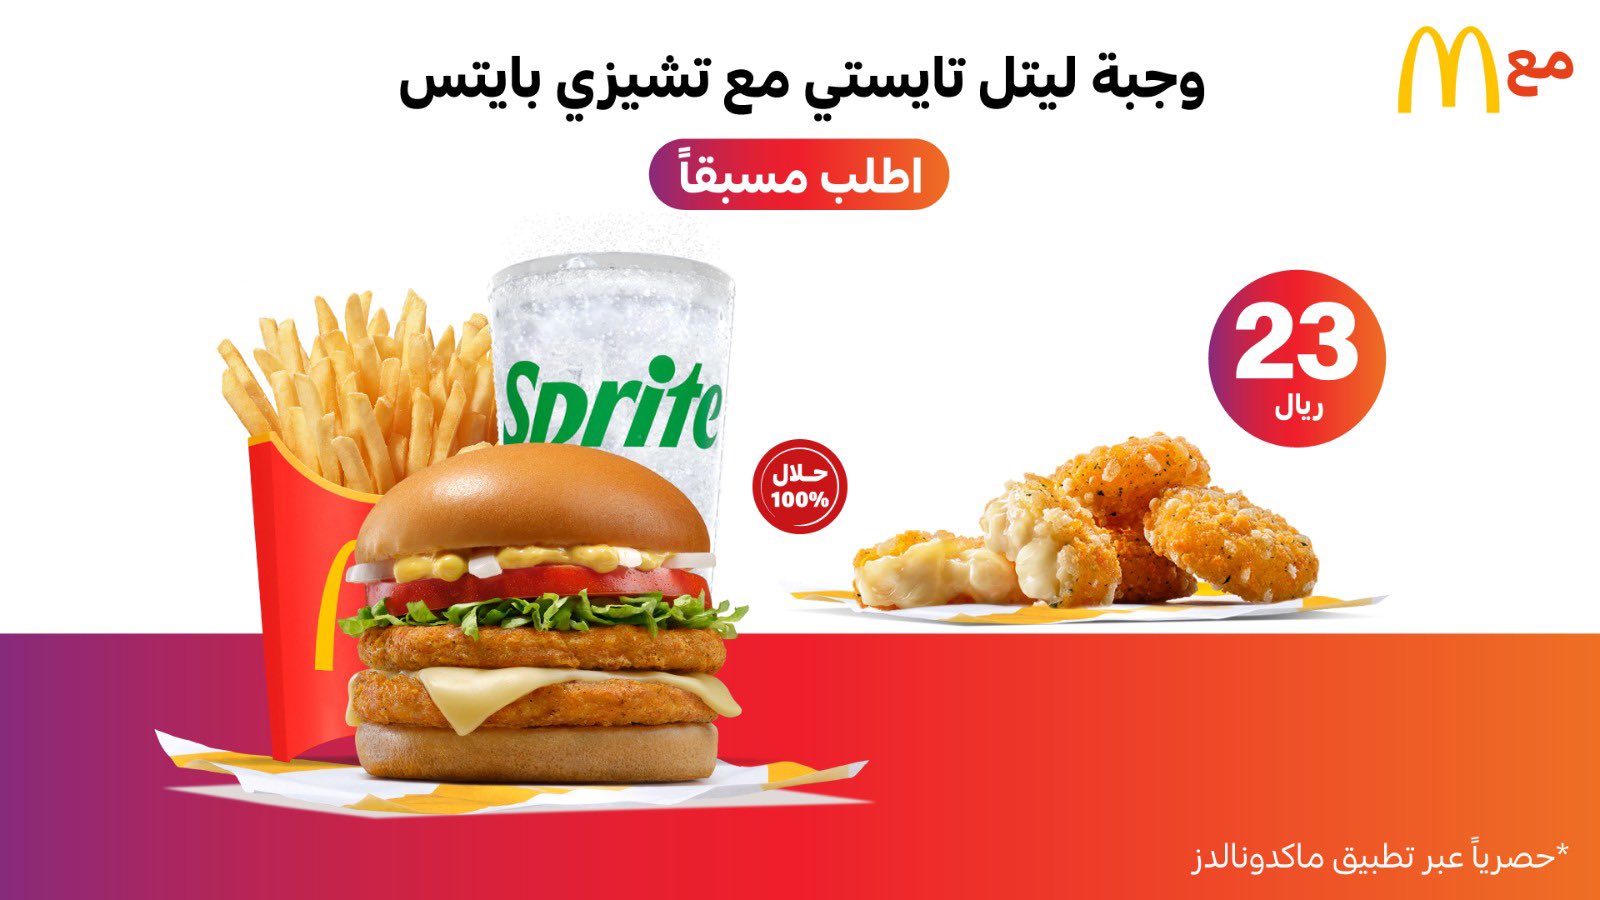 F7xKZN WQAAAy2R - عروض مطعم ماكدونالدز السعودية المنطقة الوسطى/شرقية/شمالية | عروض رهيبة